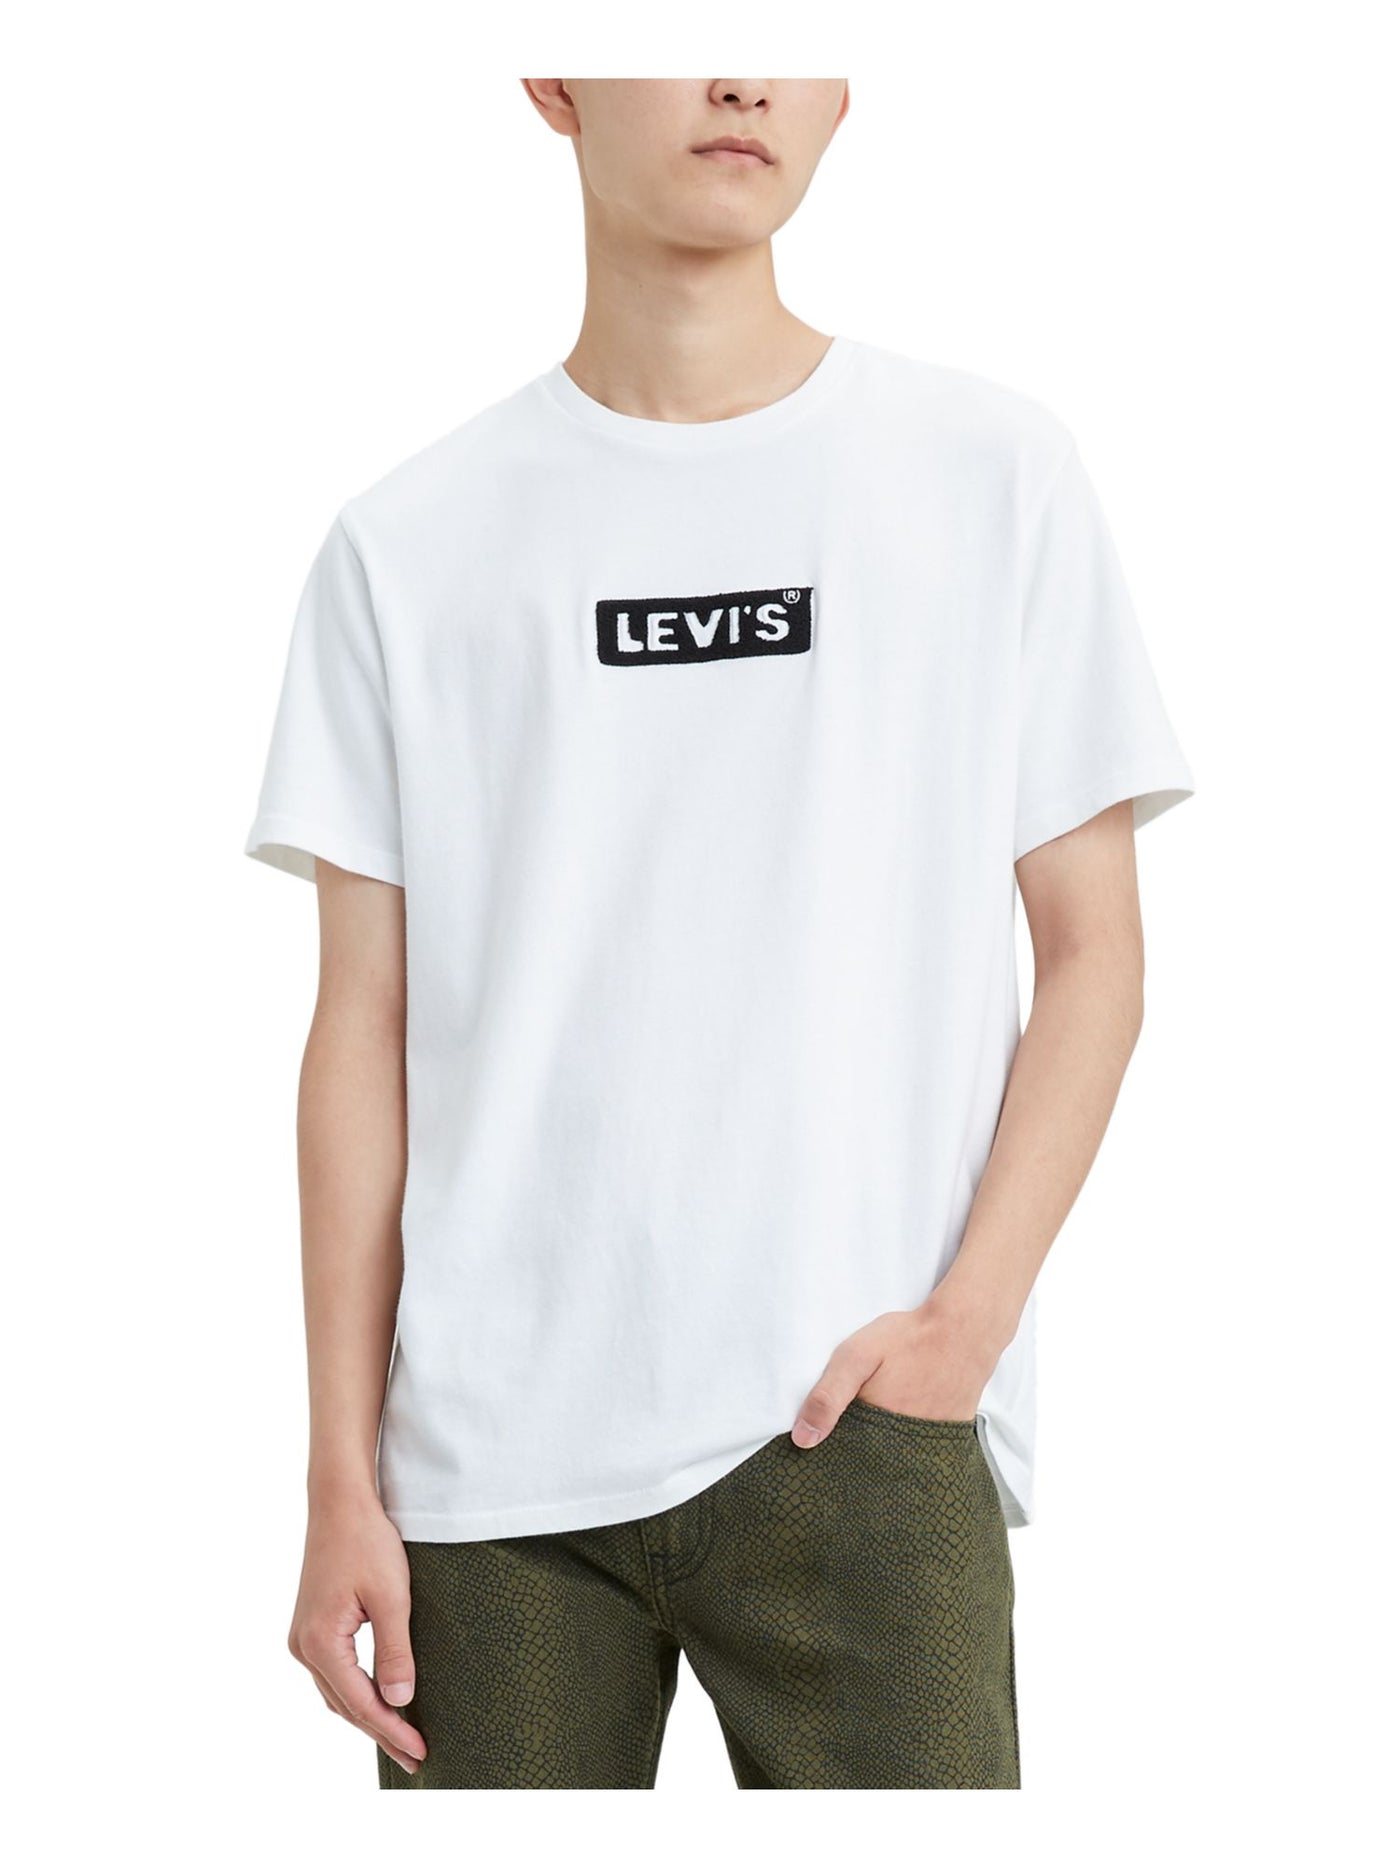 LEVI'S Mens White Logo Graphic Classic Fit Cotton T-Shirt L